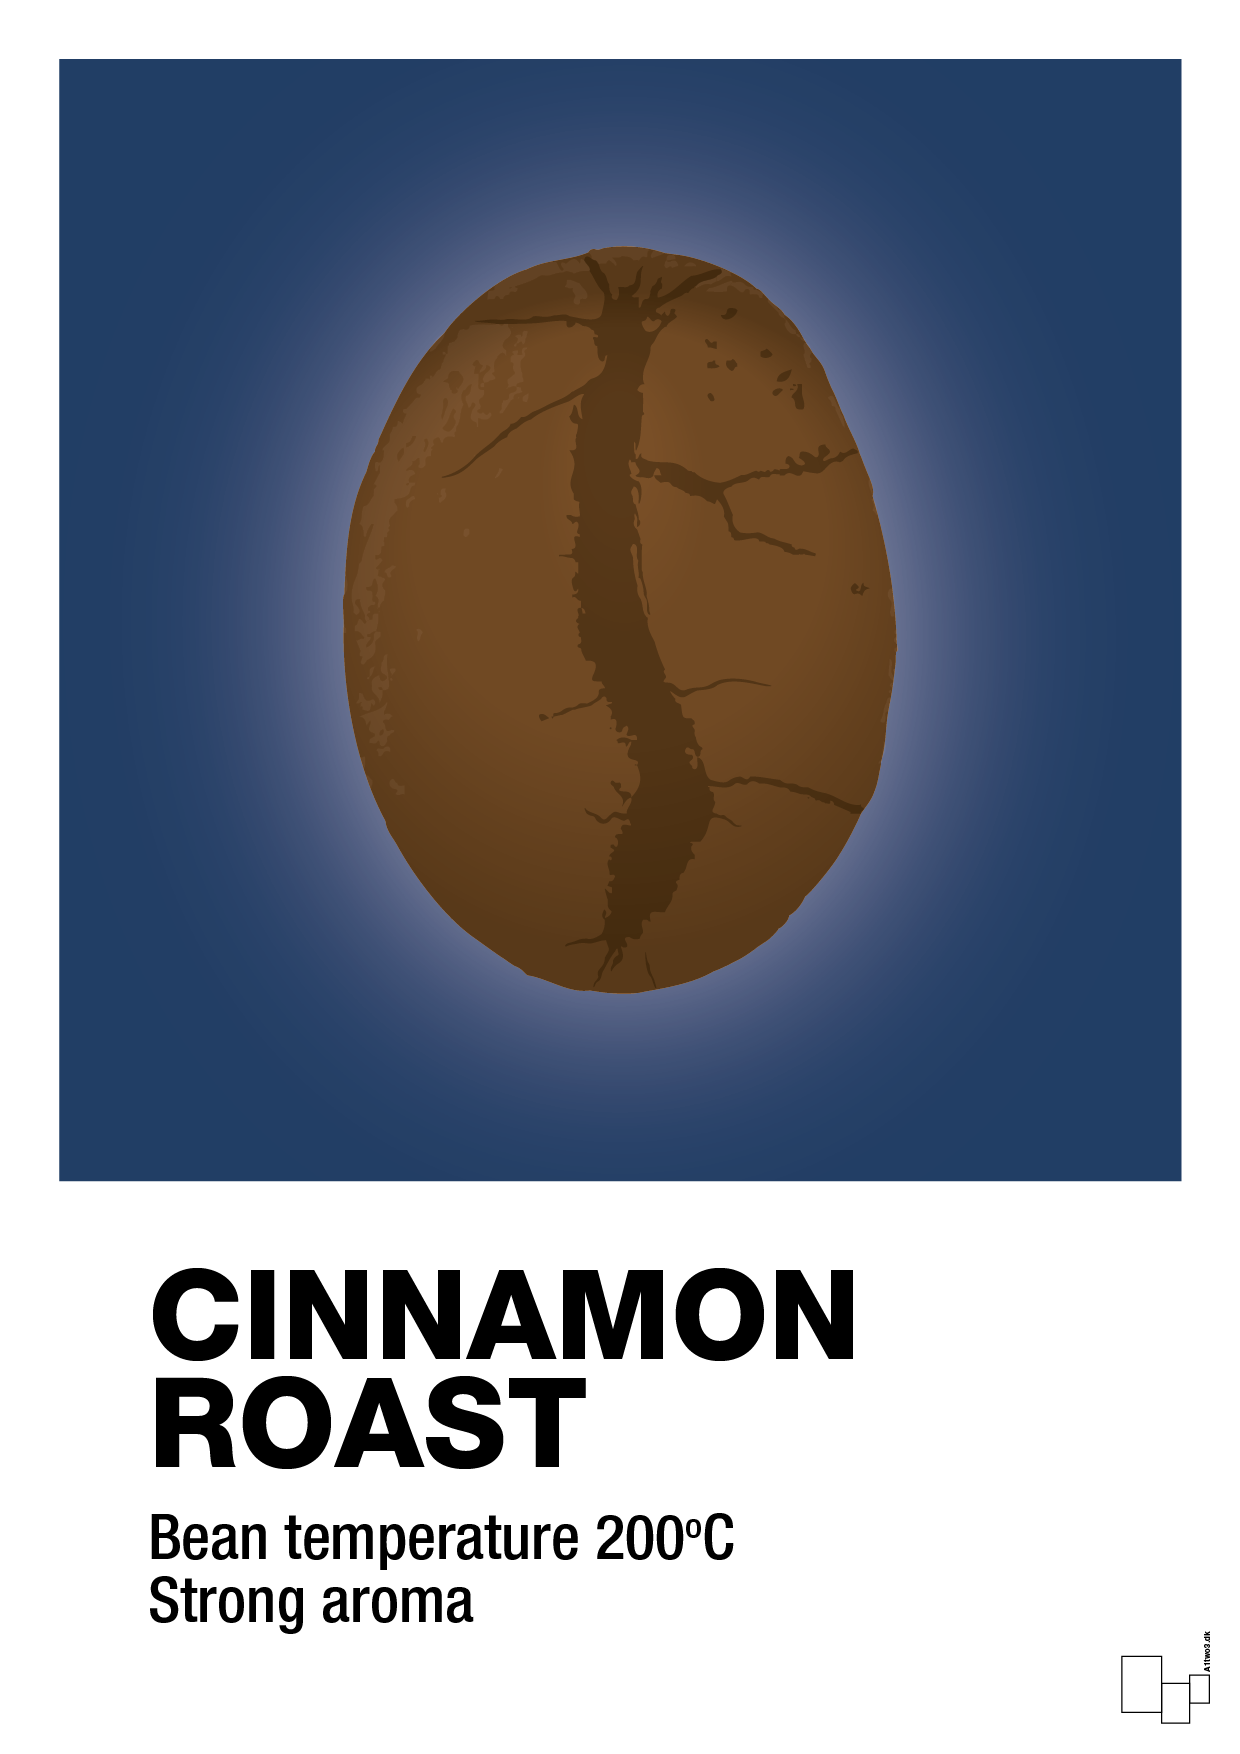 cinnamom roast - Plakat med Mad & Drikke i Lapis Blue